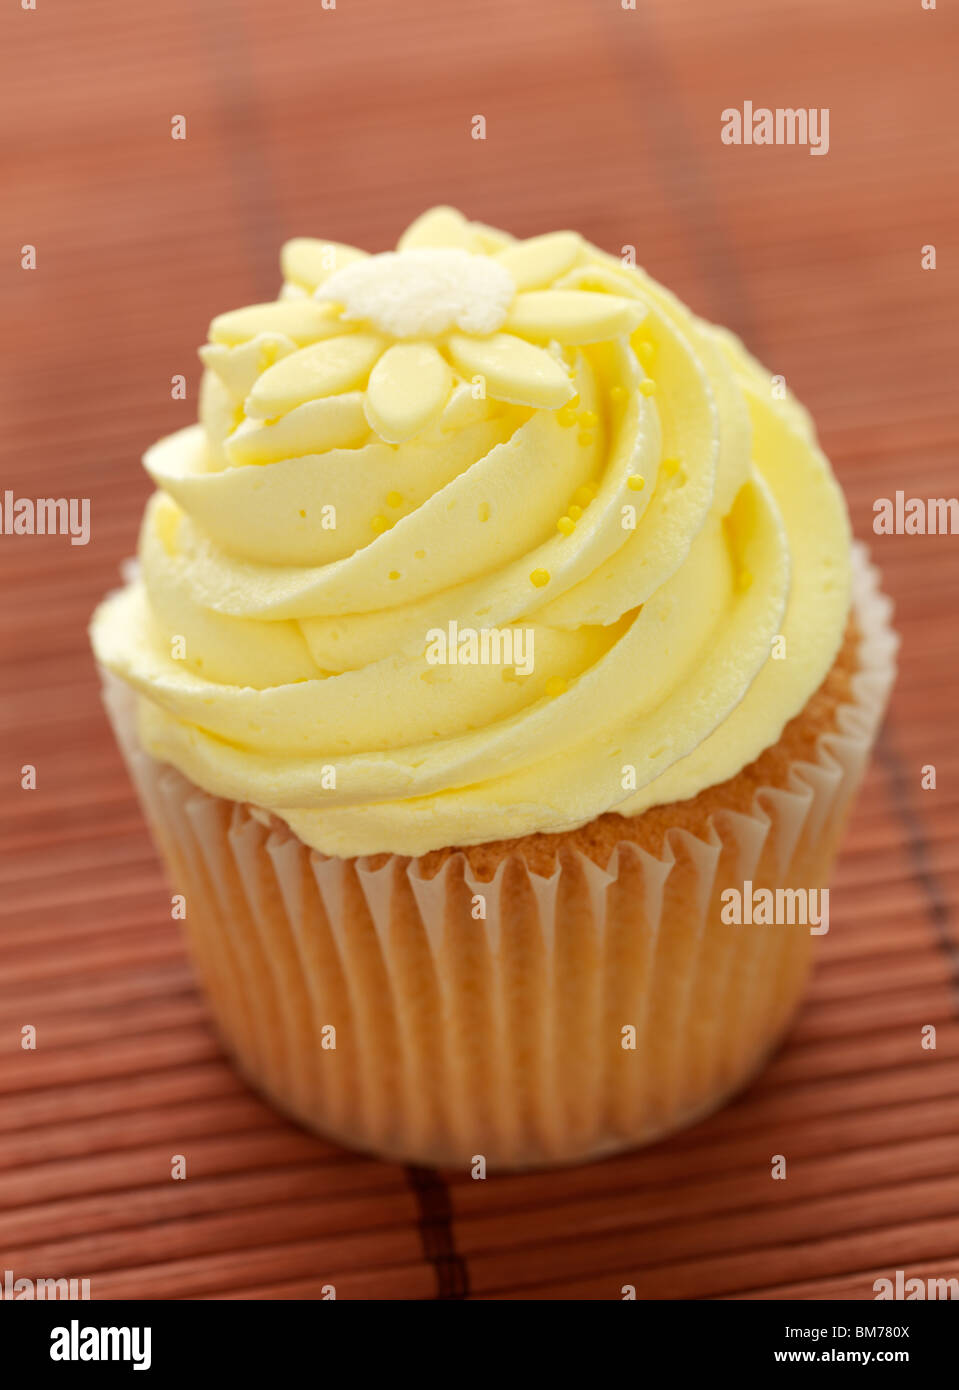 Cupcake de limón Foto de stock